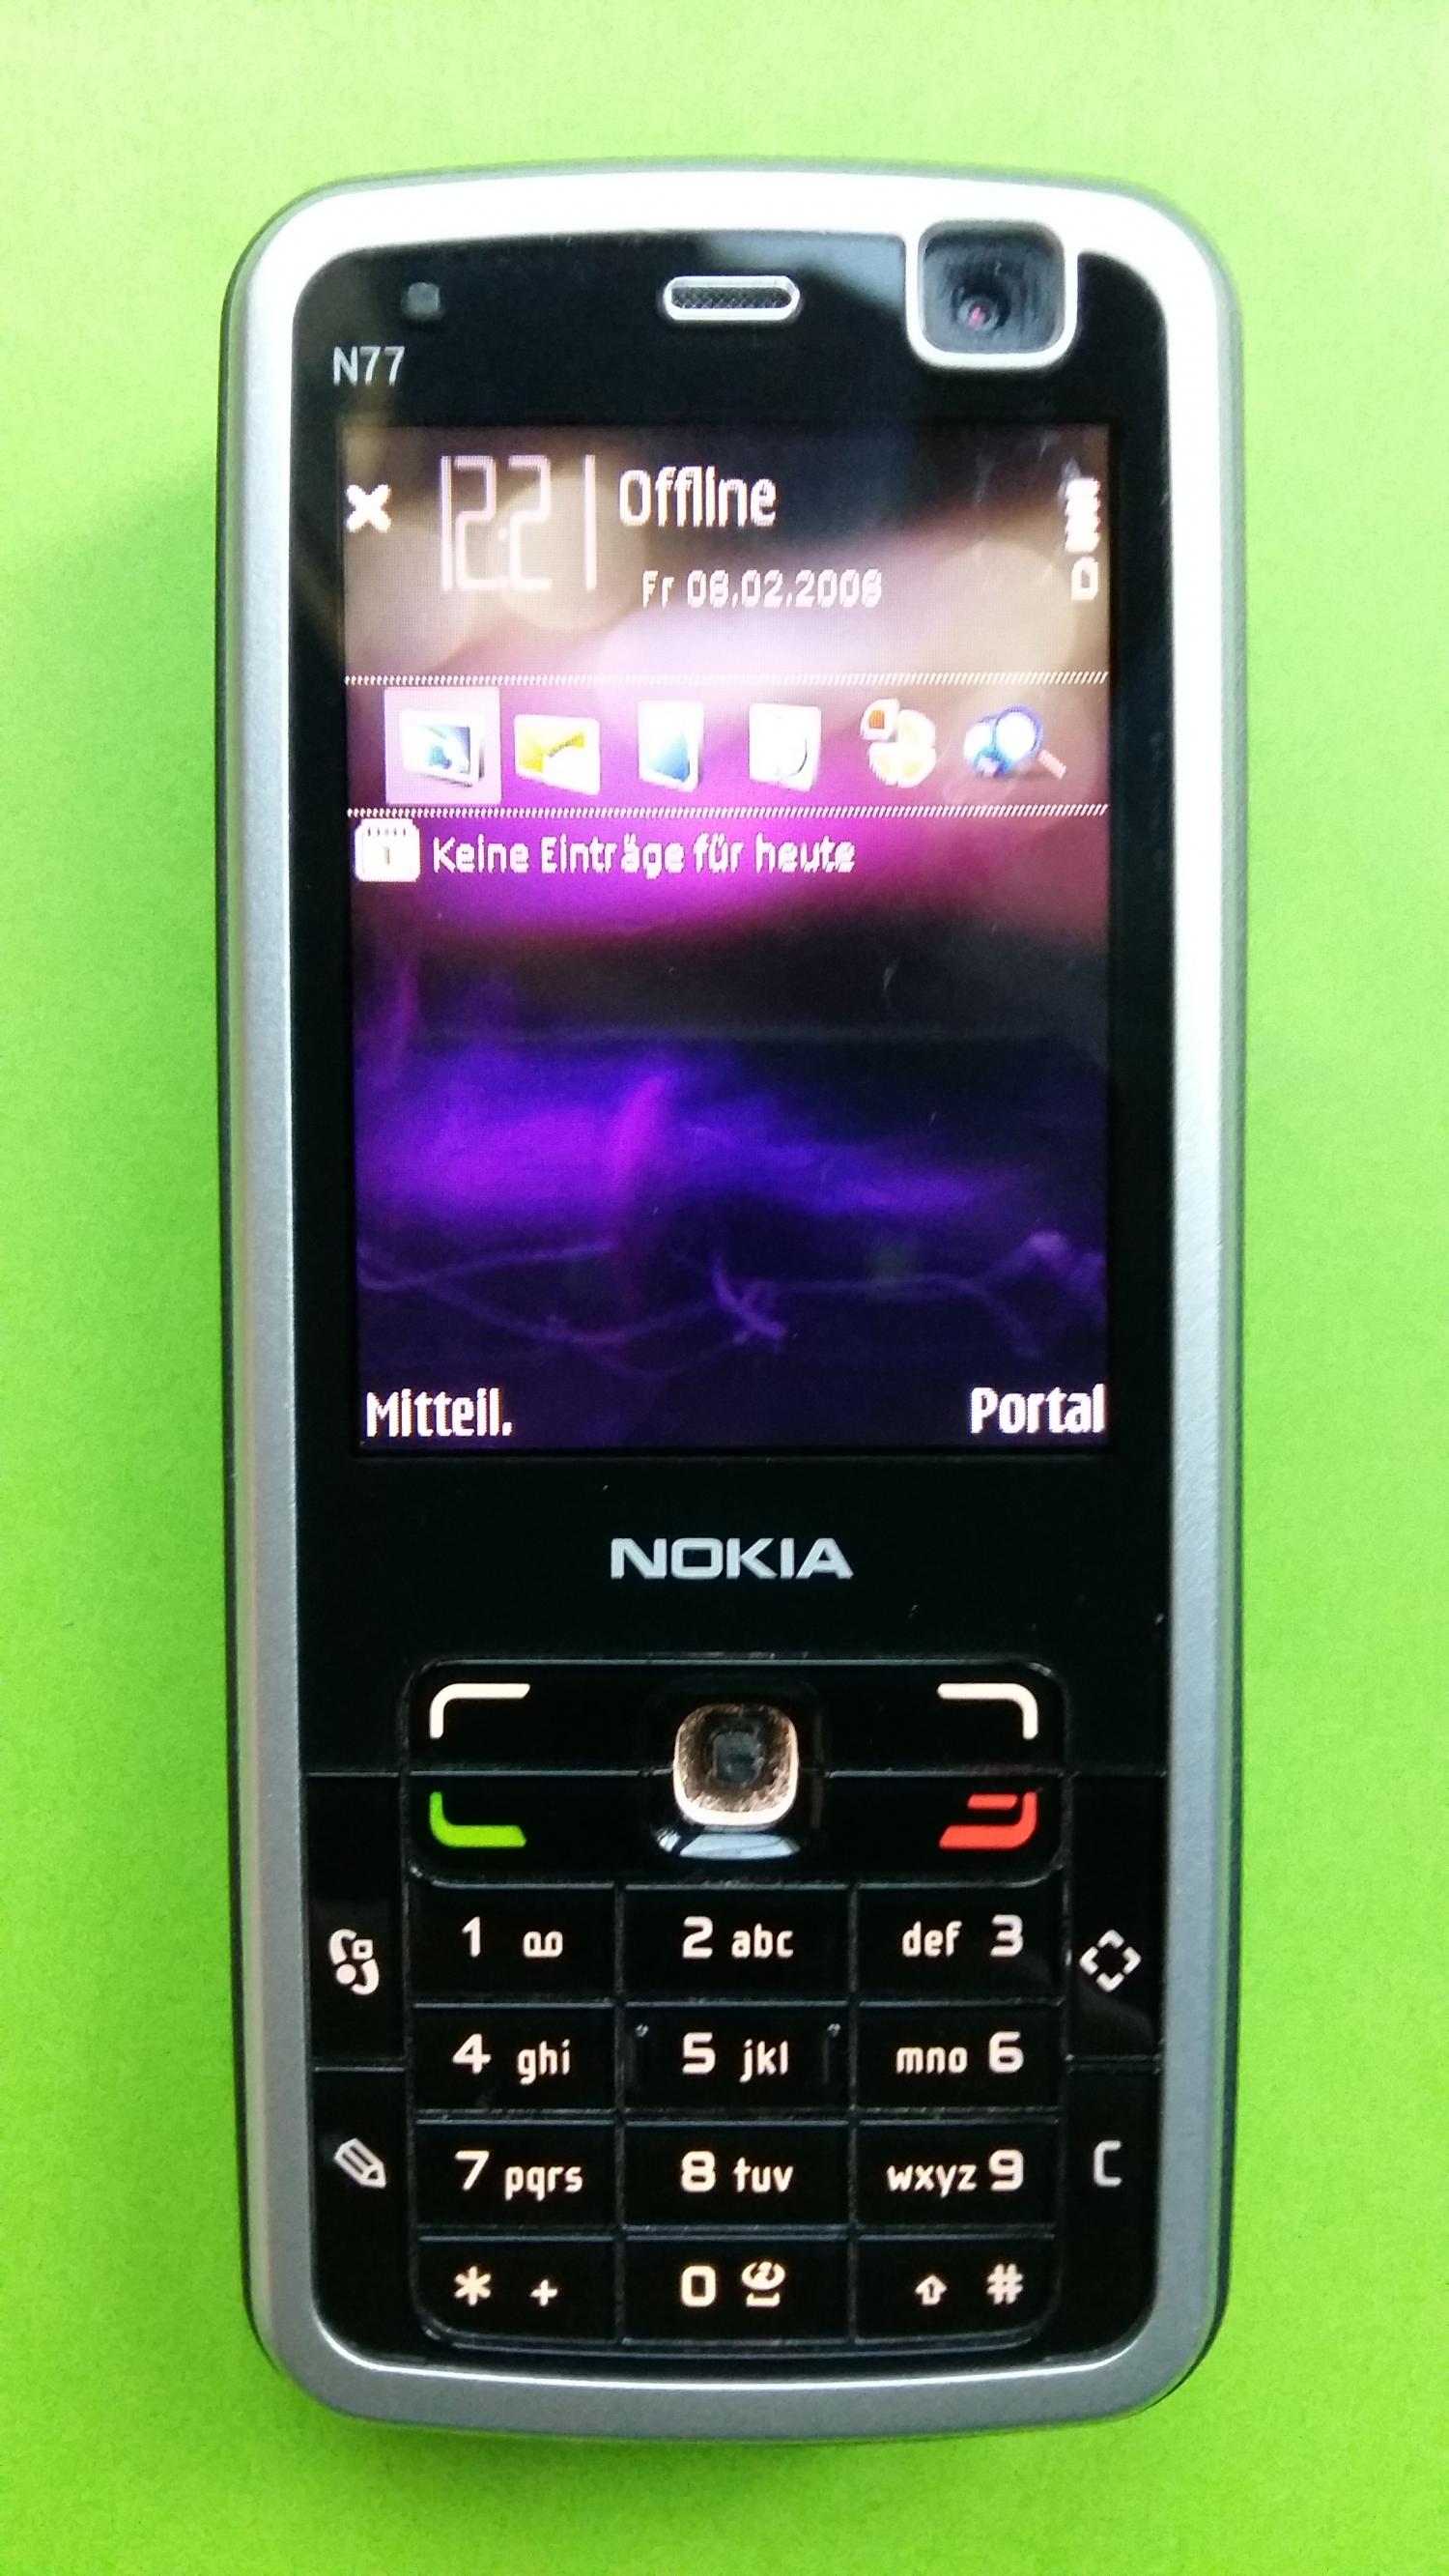 image-7307819-Nokia N77-1 (1)1.jpg